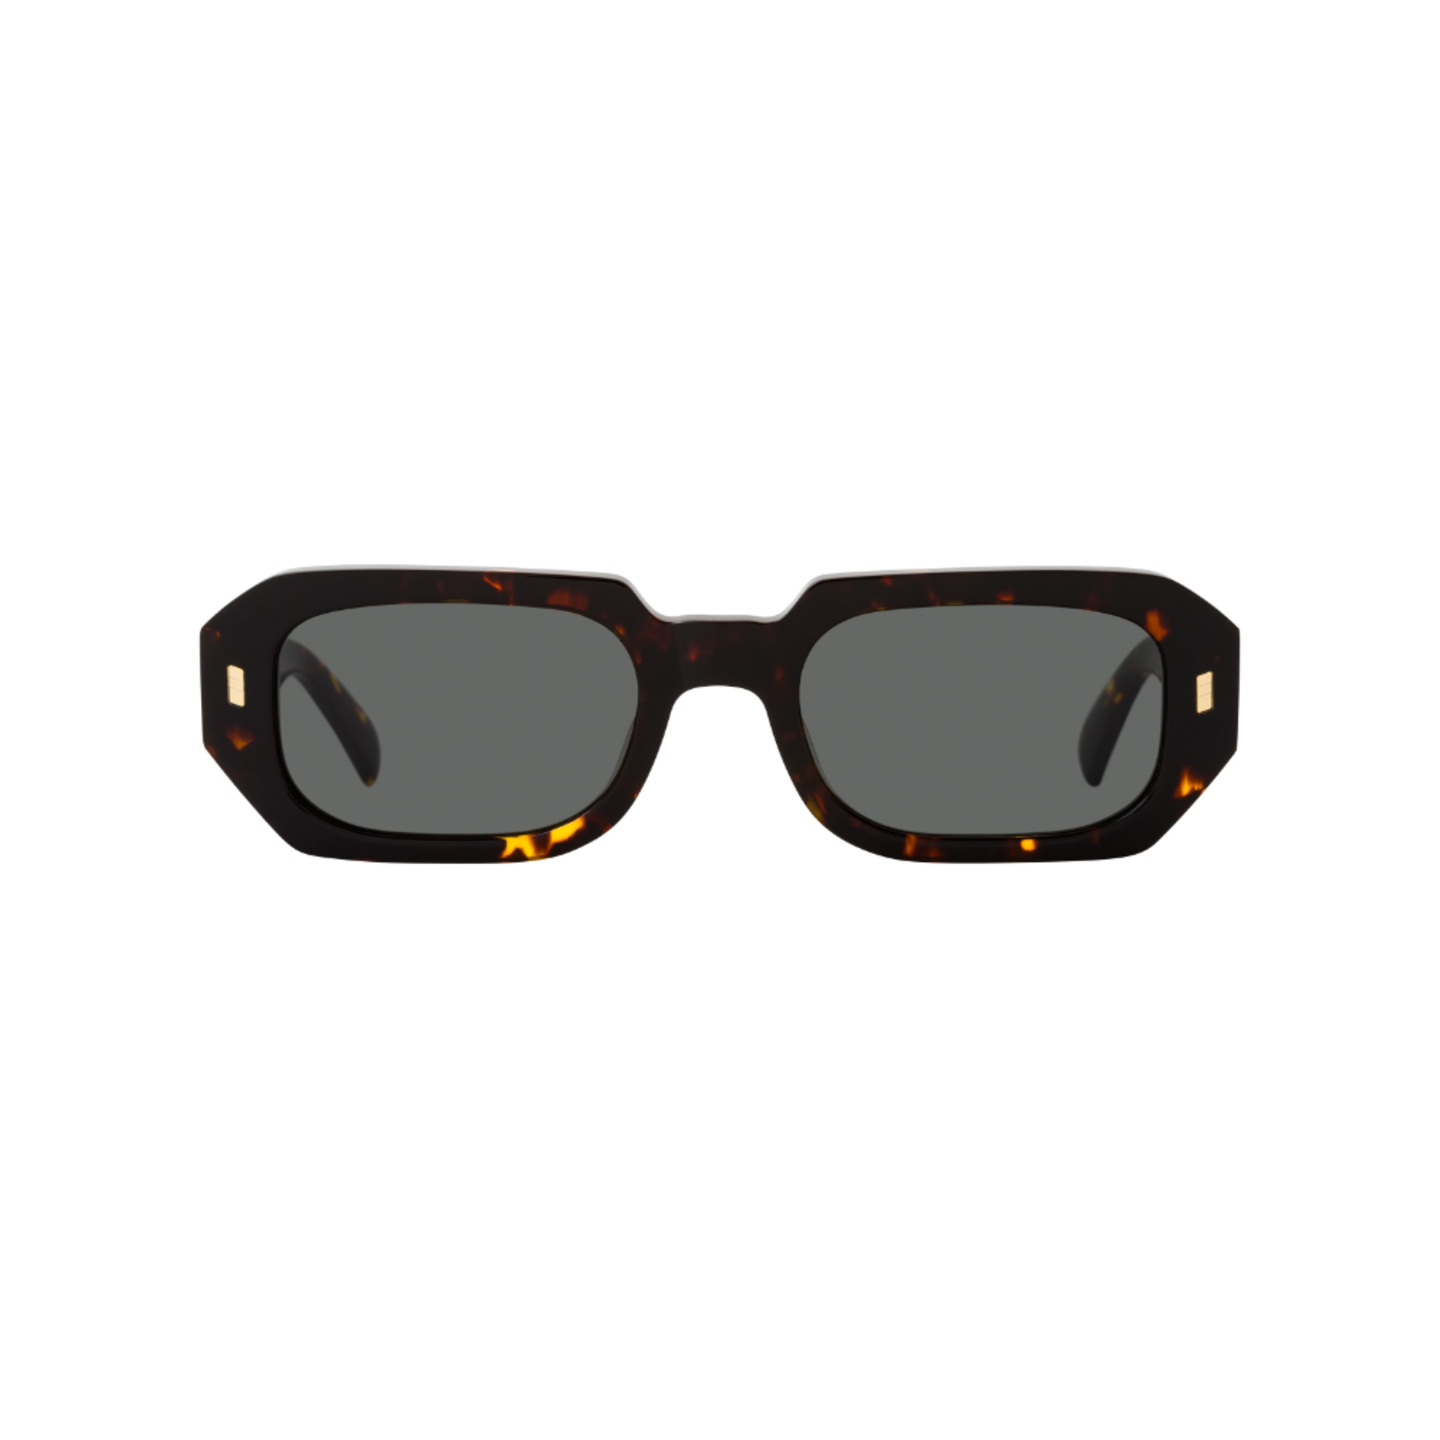 Einmal Durchblick bewahren! Kein Problem mit der GAST Eyewear Sonnenbrille von Mister Spex, die ganz nebenbei auch für stilvolle, sommerliche Italien-Vibes sorgt. Das Dolce-Vita-Feeling in Sonnenbrillenform gibt es für ungefähr 119 Euro zu kaufen. 